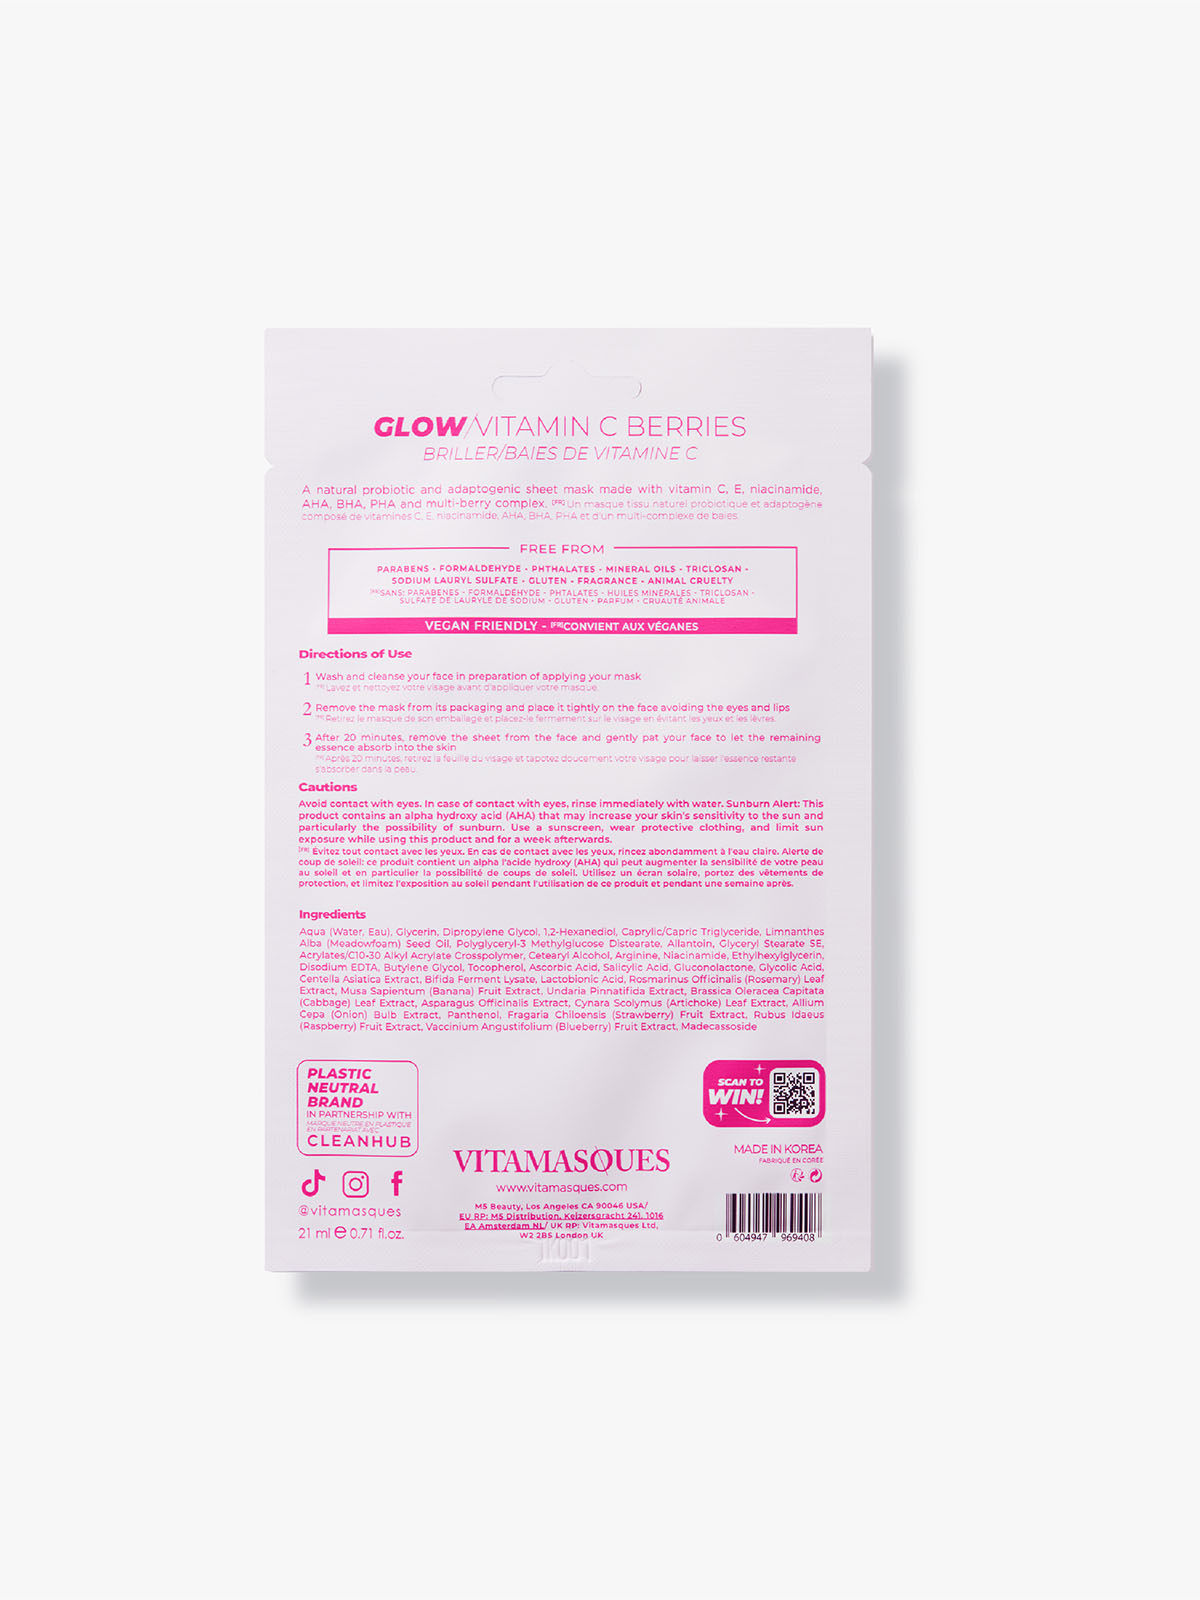 Glow Vitamin C Berries Face Sheet Mask